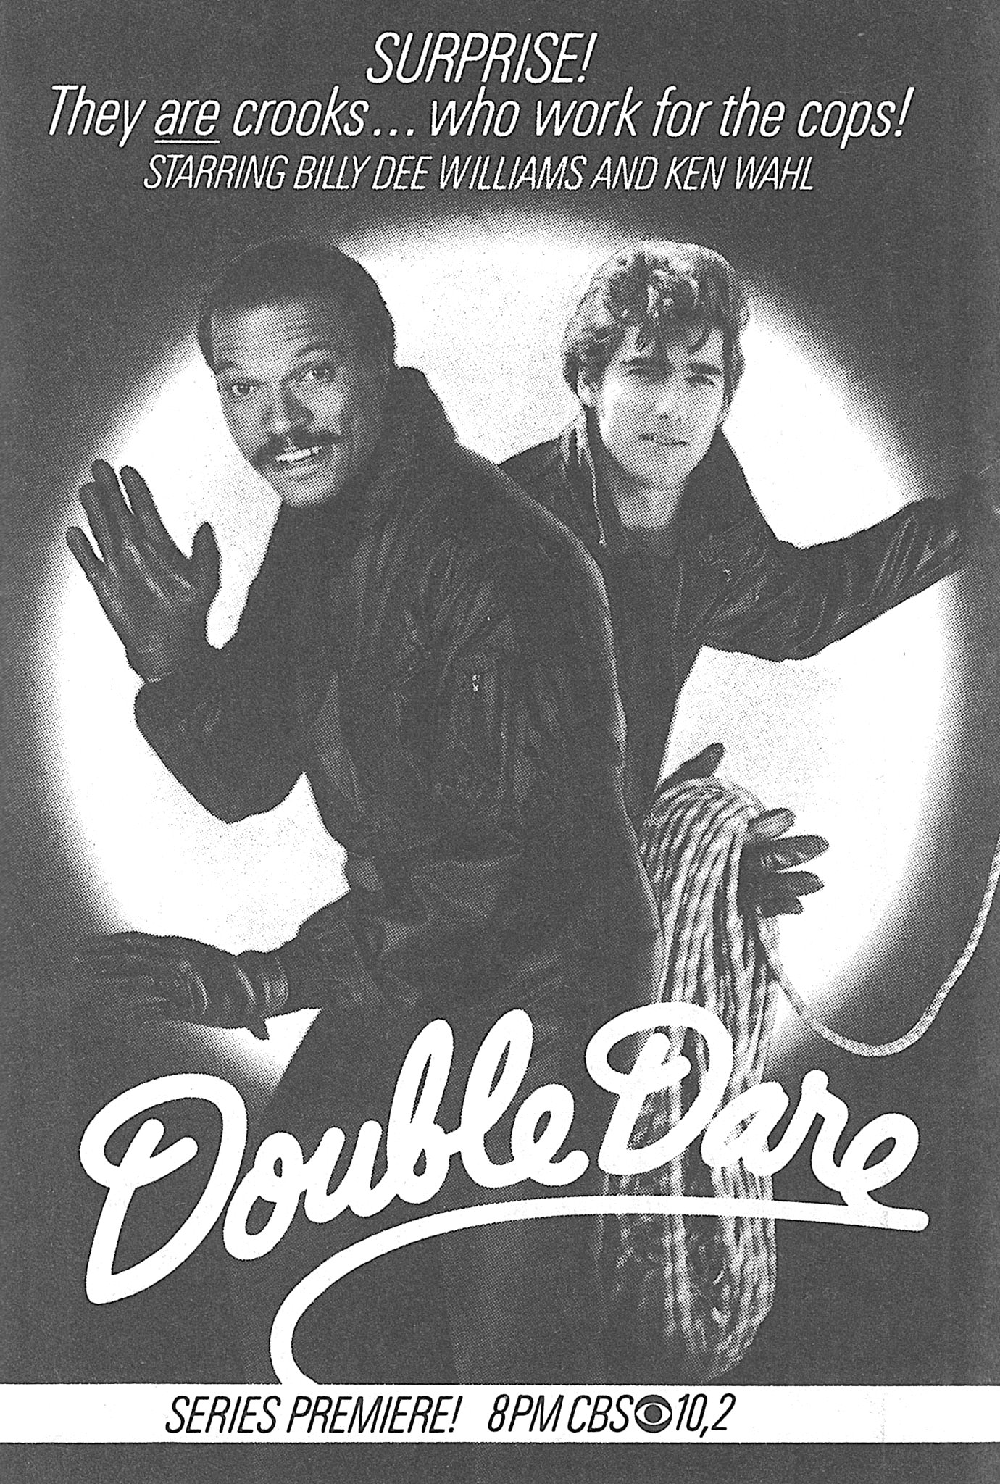 telephemera years 1984 double dare